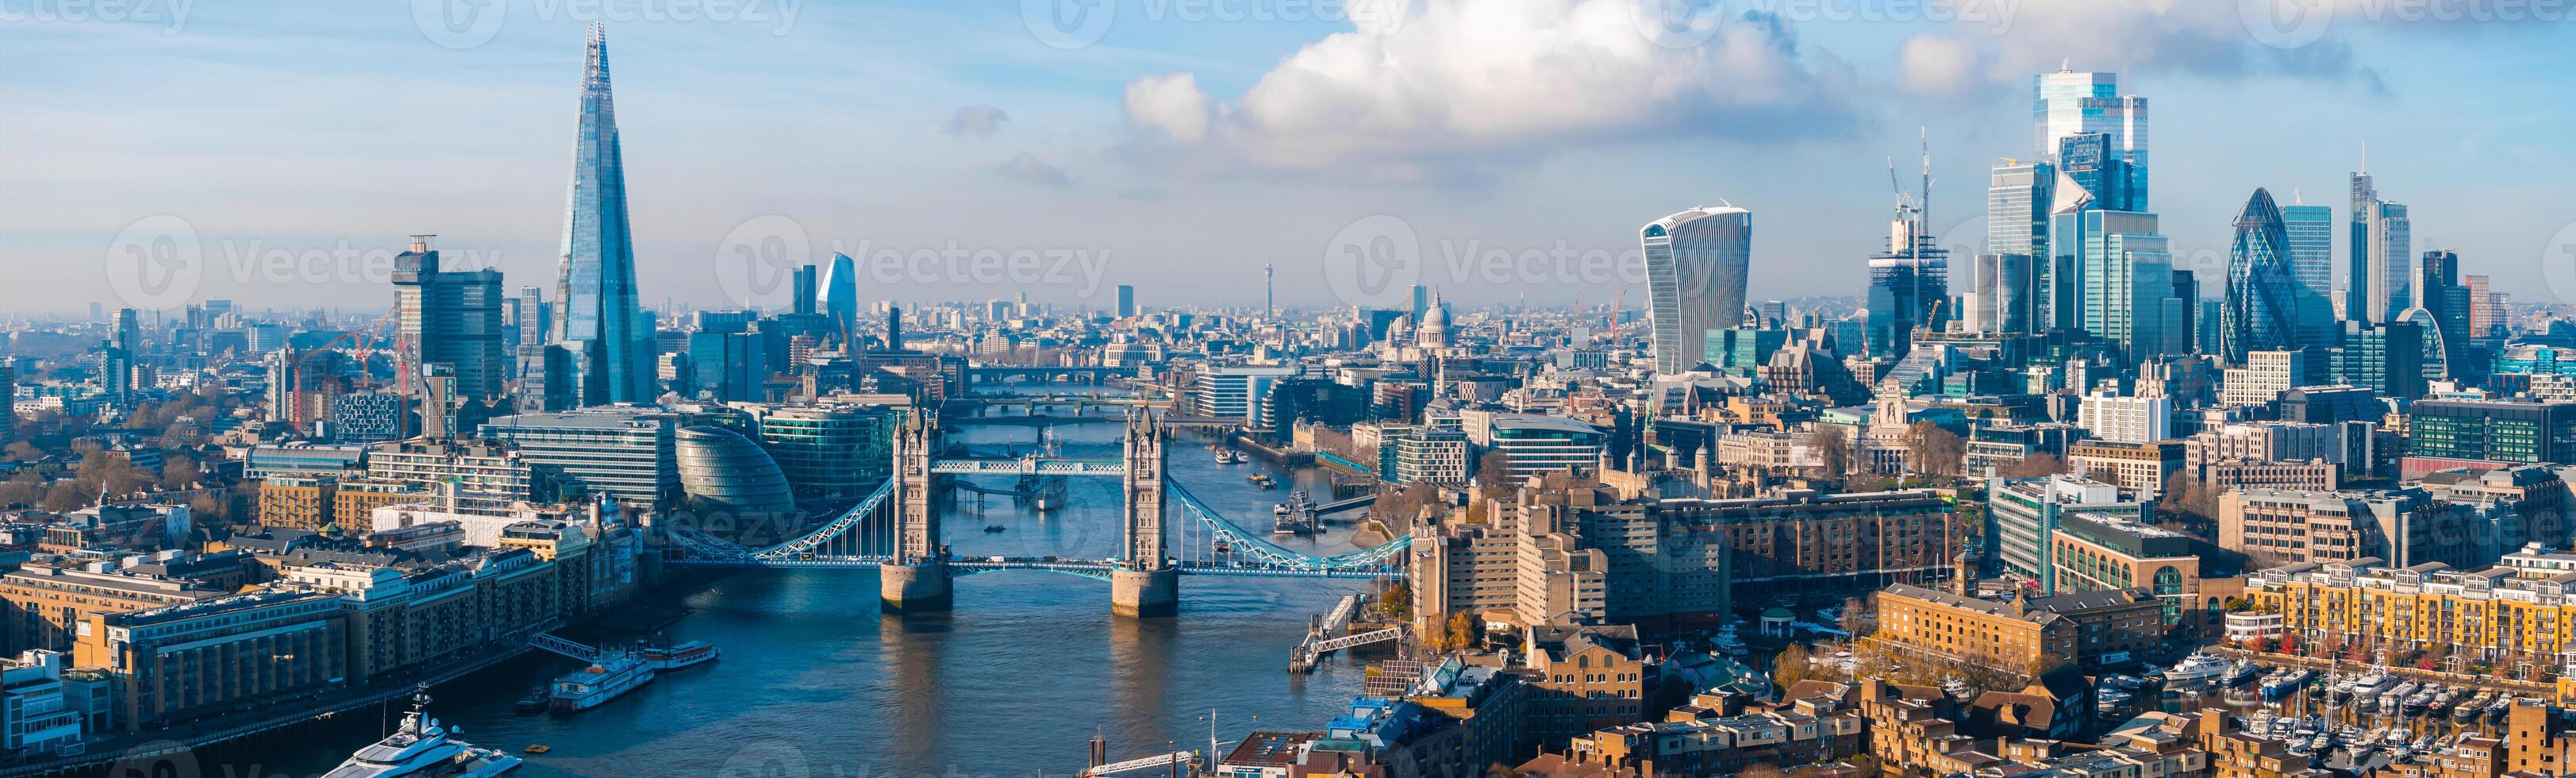 aereo Visualizza di il iconico Torre ponte collegamento londinese con Southwark foto